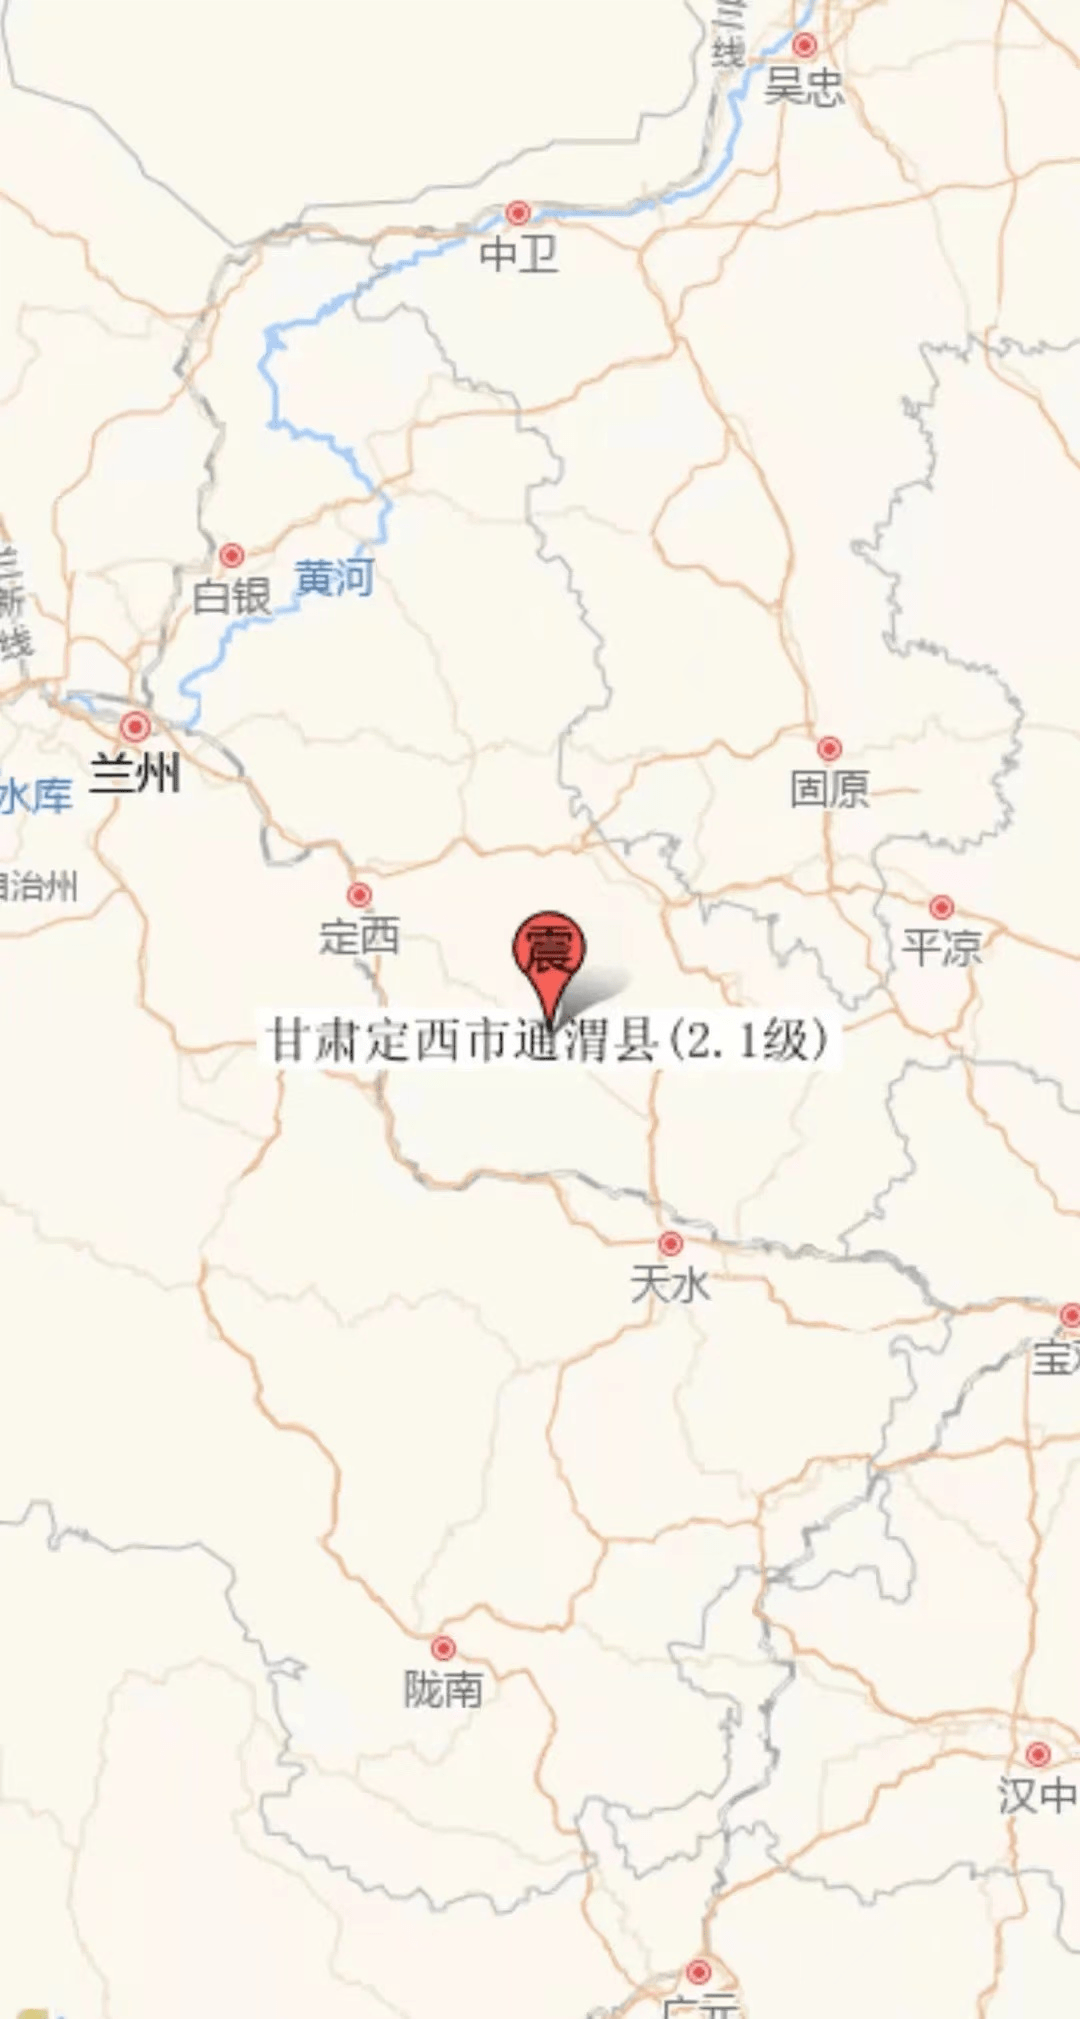 据甘肃地震台网测定,北京时间12月18日12:13,在甘肃定西市通渭县(北纬